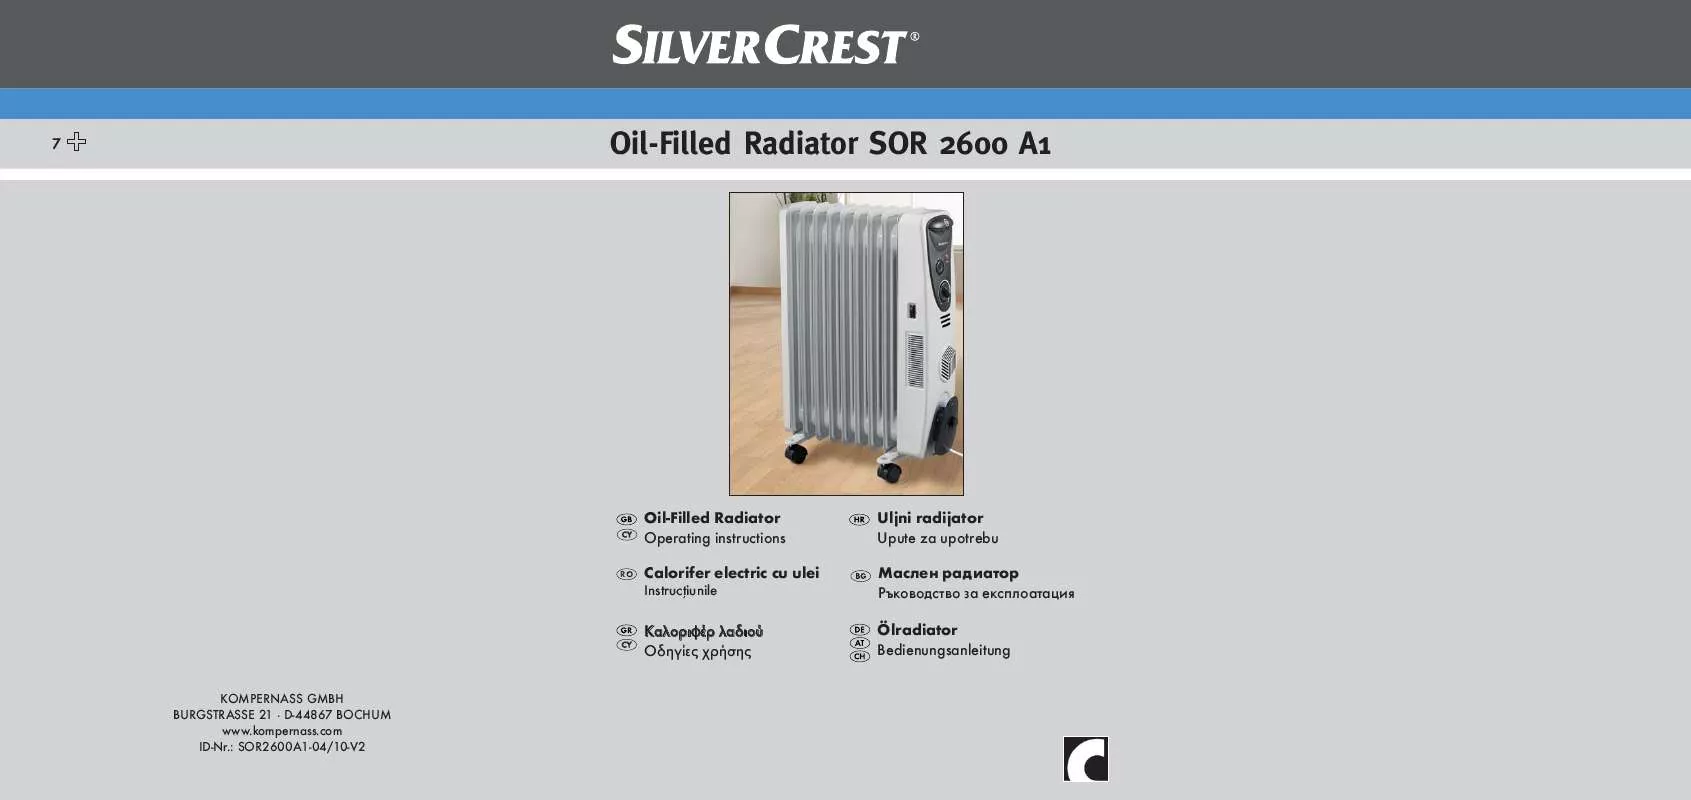 Mode d'emploi SILVERCREST SOR 2600 A1 OIL-FILLED RADIATOR